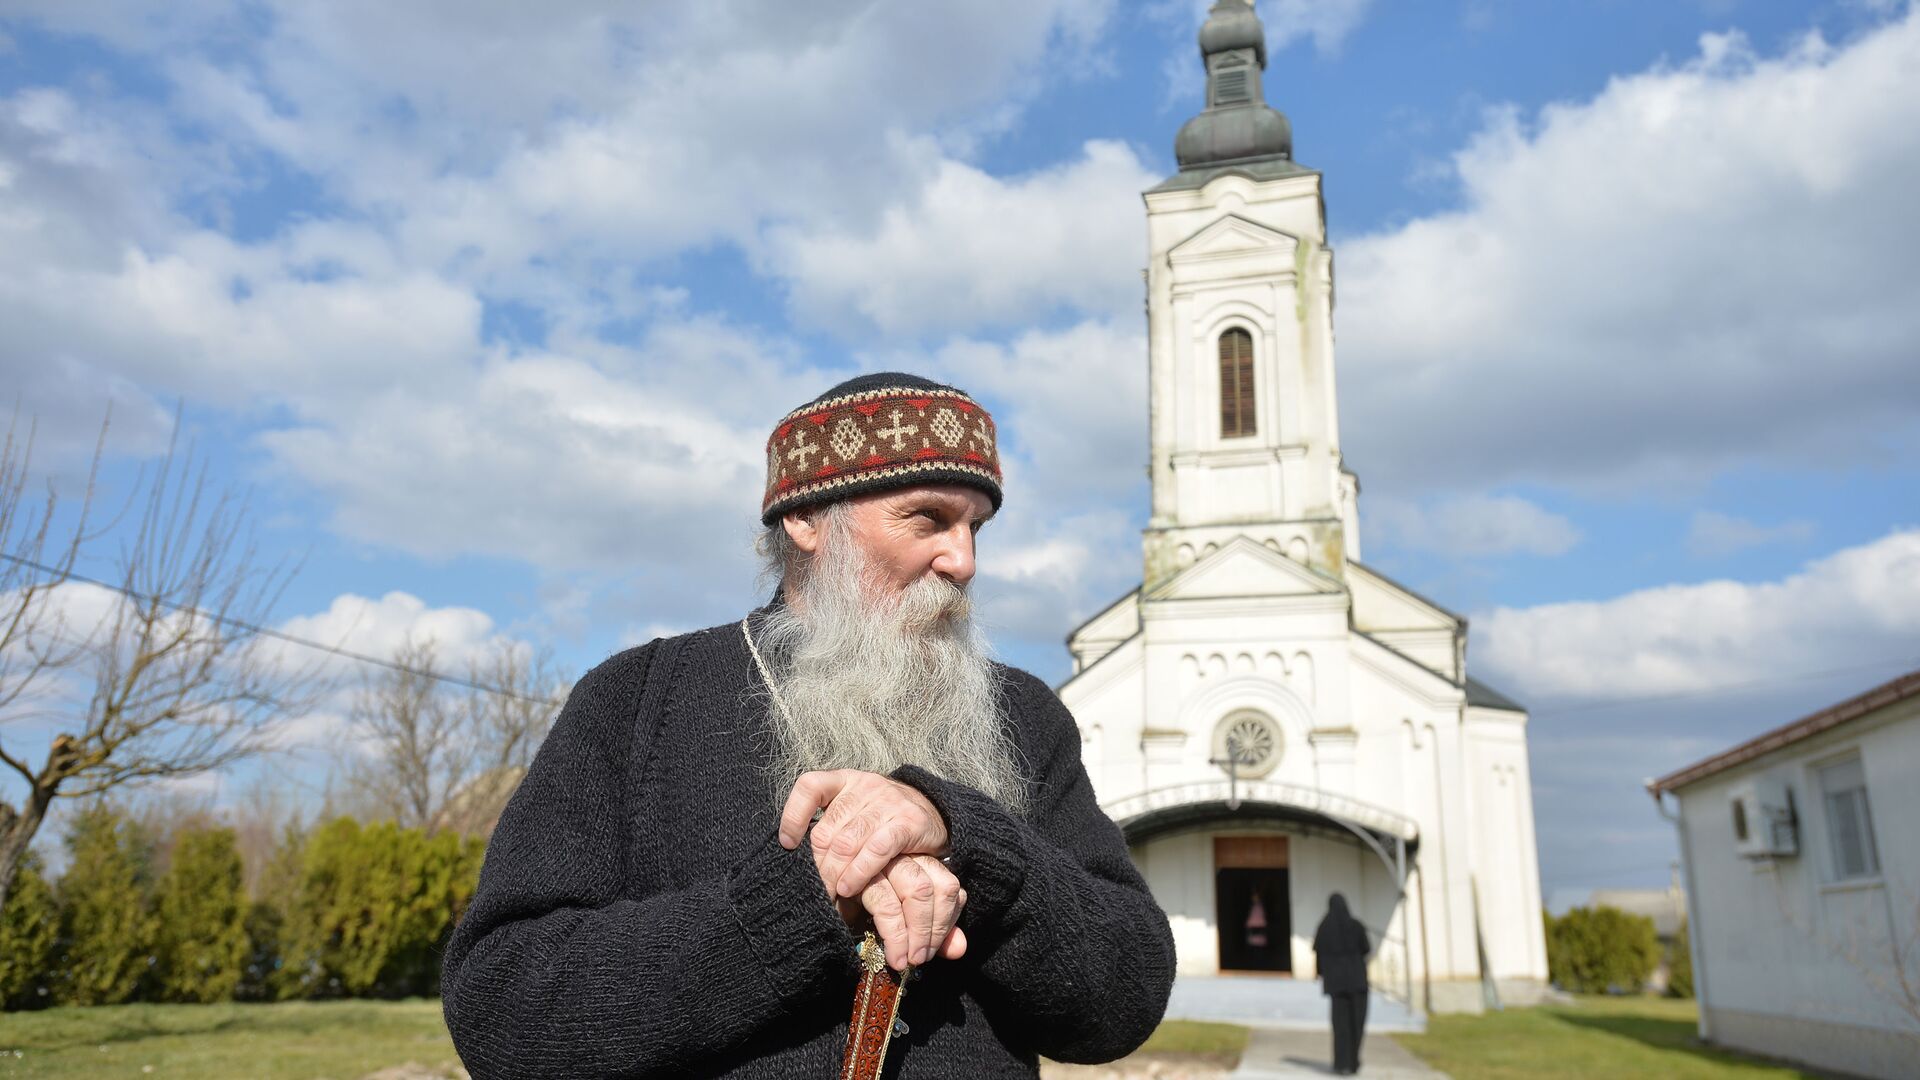 Episkop pakračko - slavonski Jovan Ćulibrk ispred manastira u Jasenovcu. - Sputnik Srbija, 1920, 28.02.2021